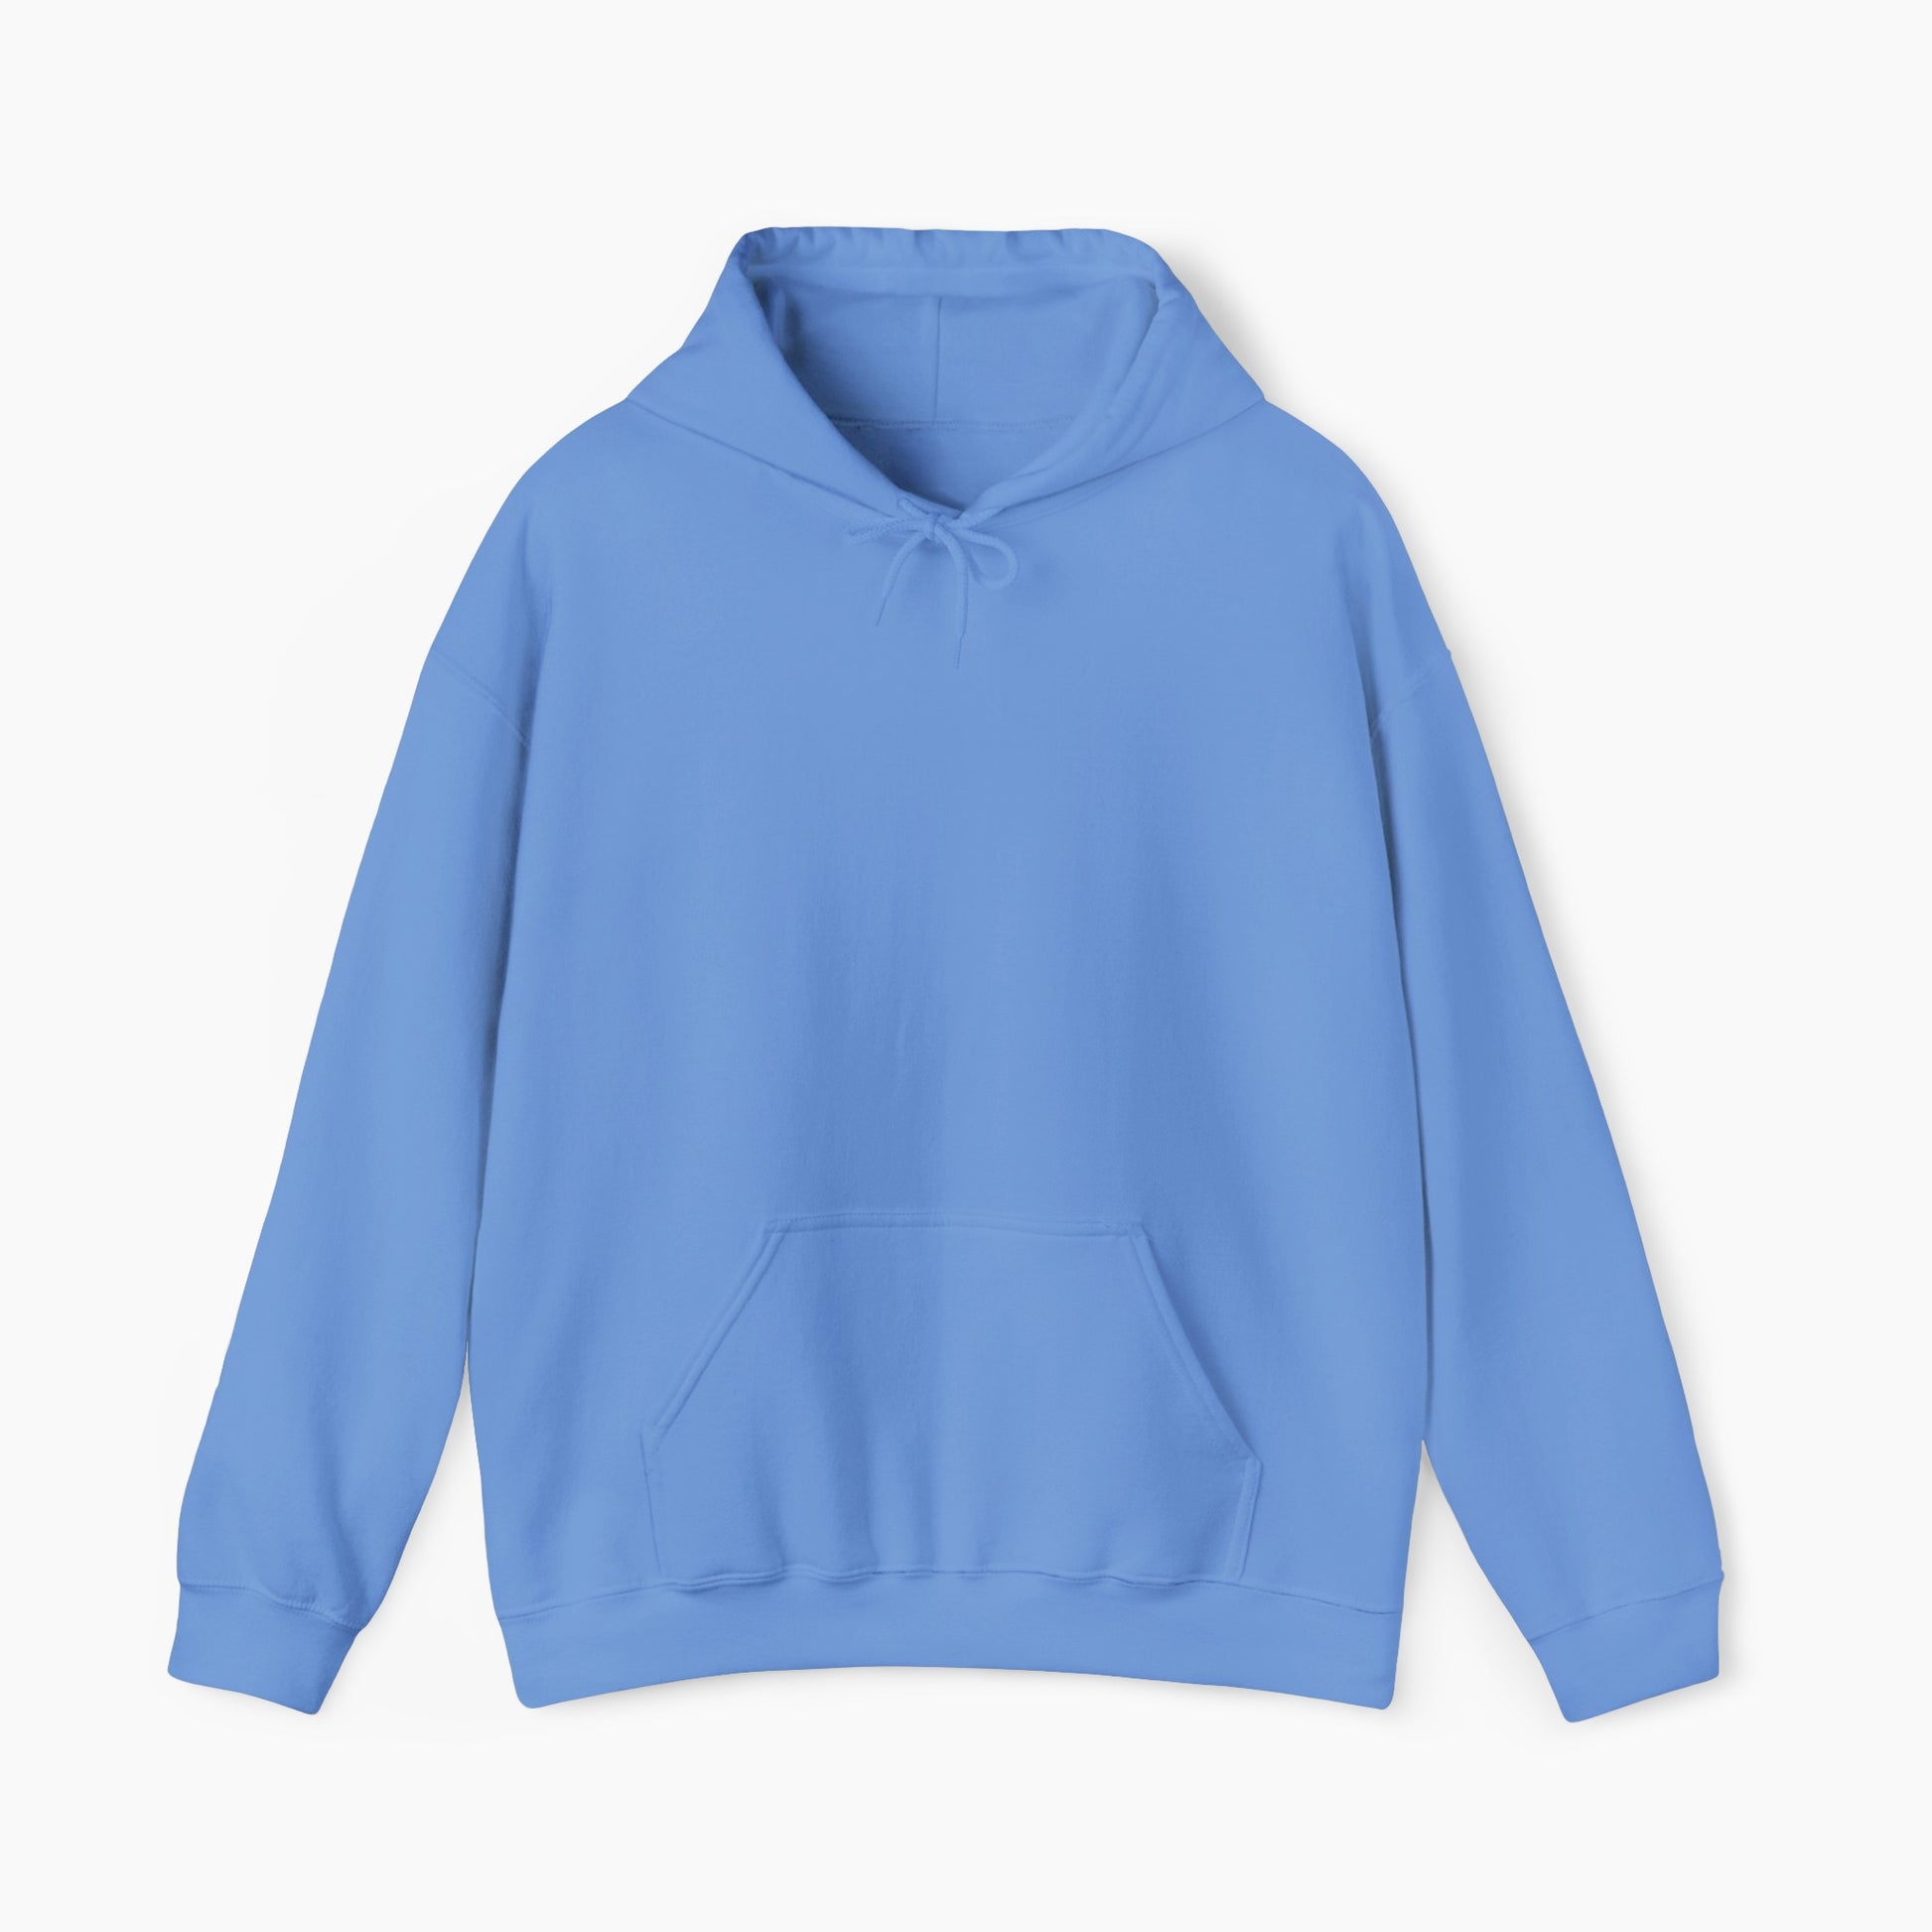 This is my camping hoodie Unisex Heavy Blend™ Hooded Sweatshirt - Camping Tee